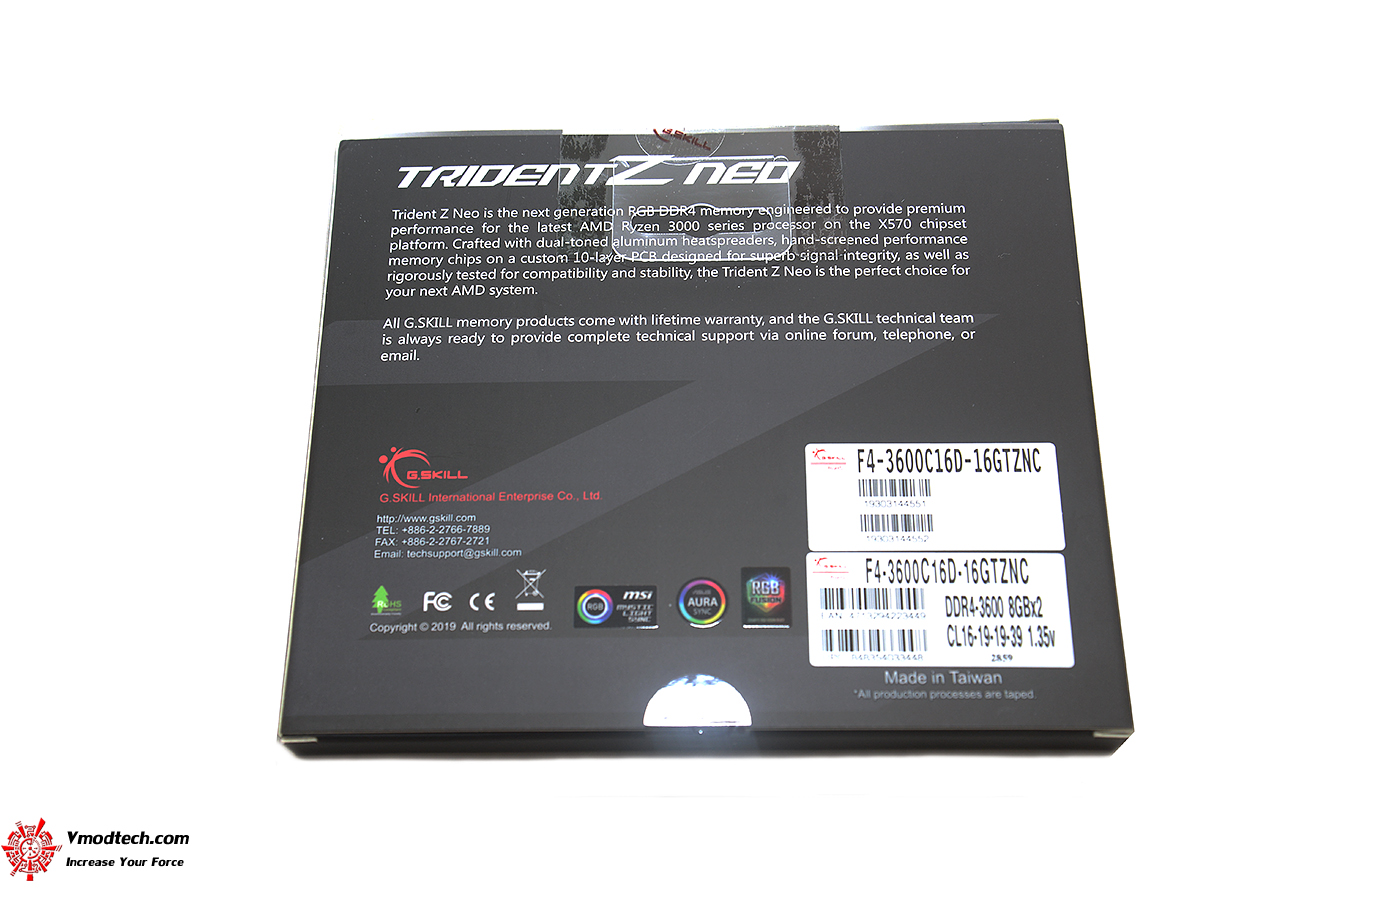 dsc 6113 G.SKILL Trident Z Neo DDR4 3600MHz CL16 19 19 39 1.35V 16GB (2x8GB) Review